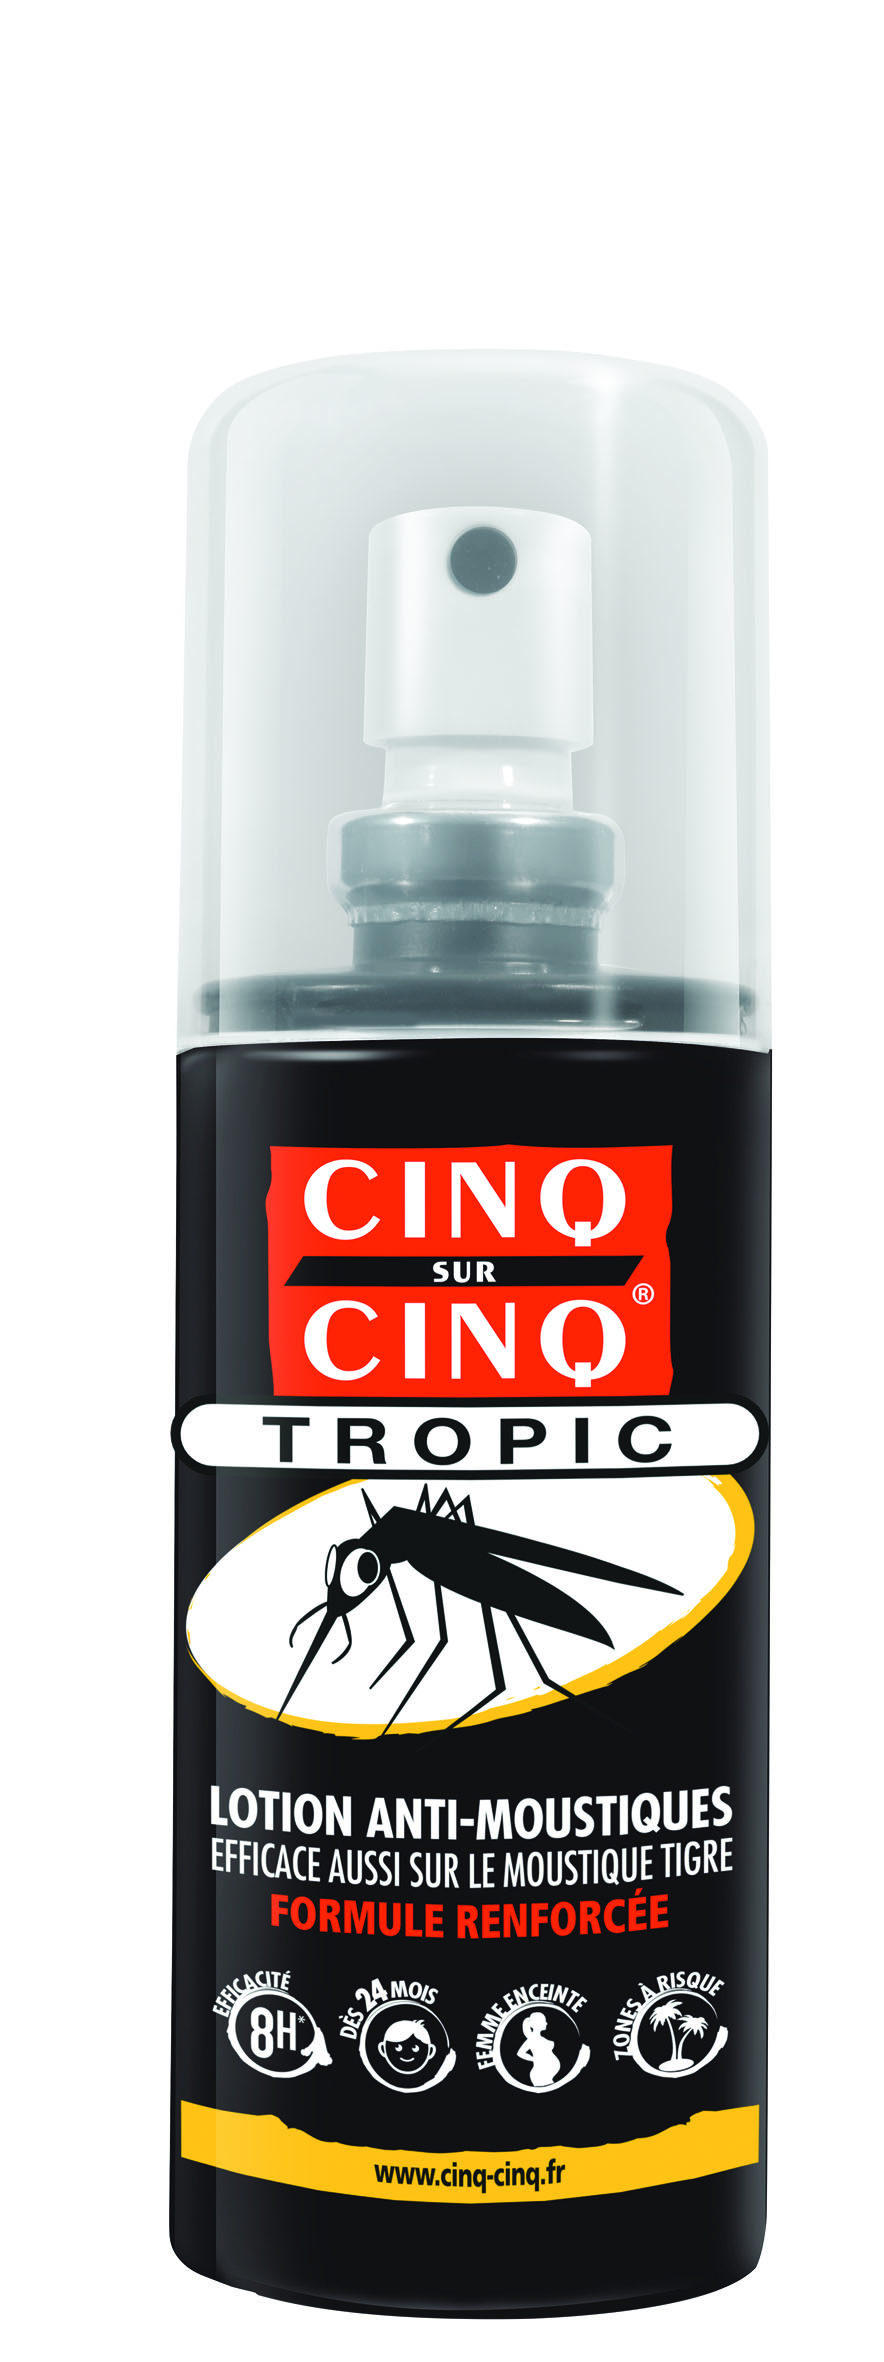 CINQ SUR CINQ TROPIC Lotion Anti-Moustiques 100ml